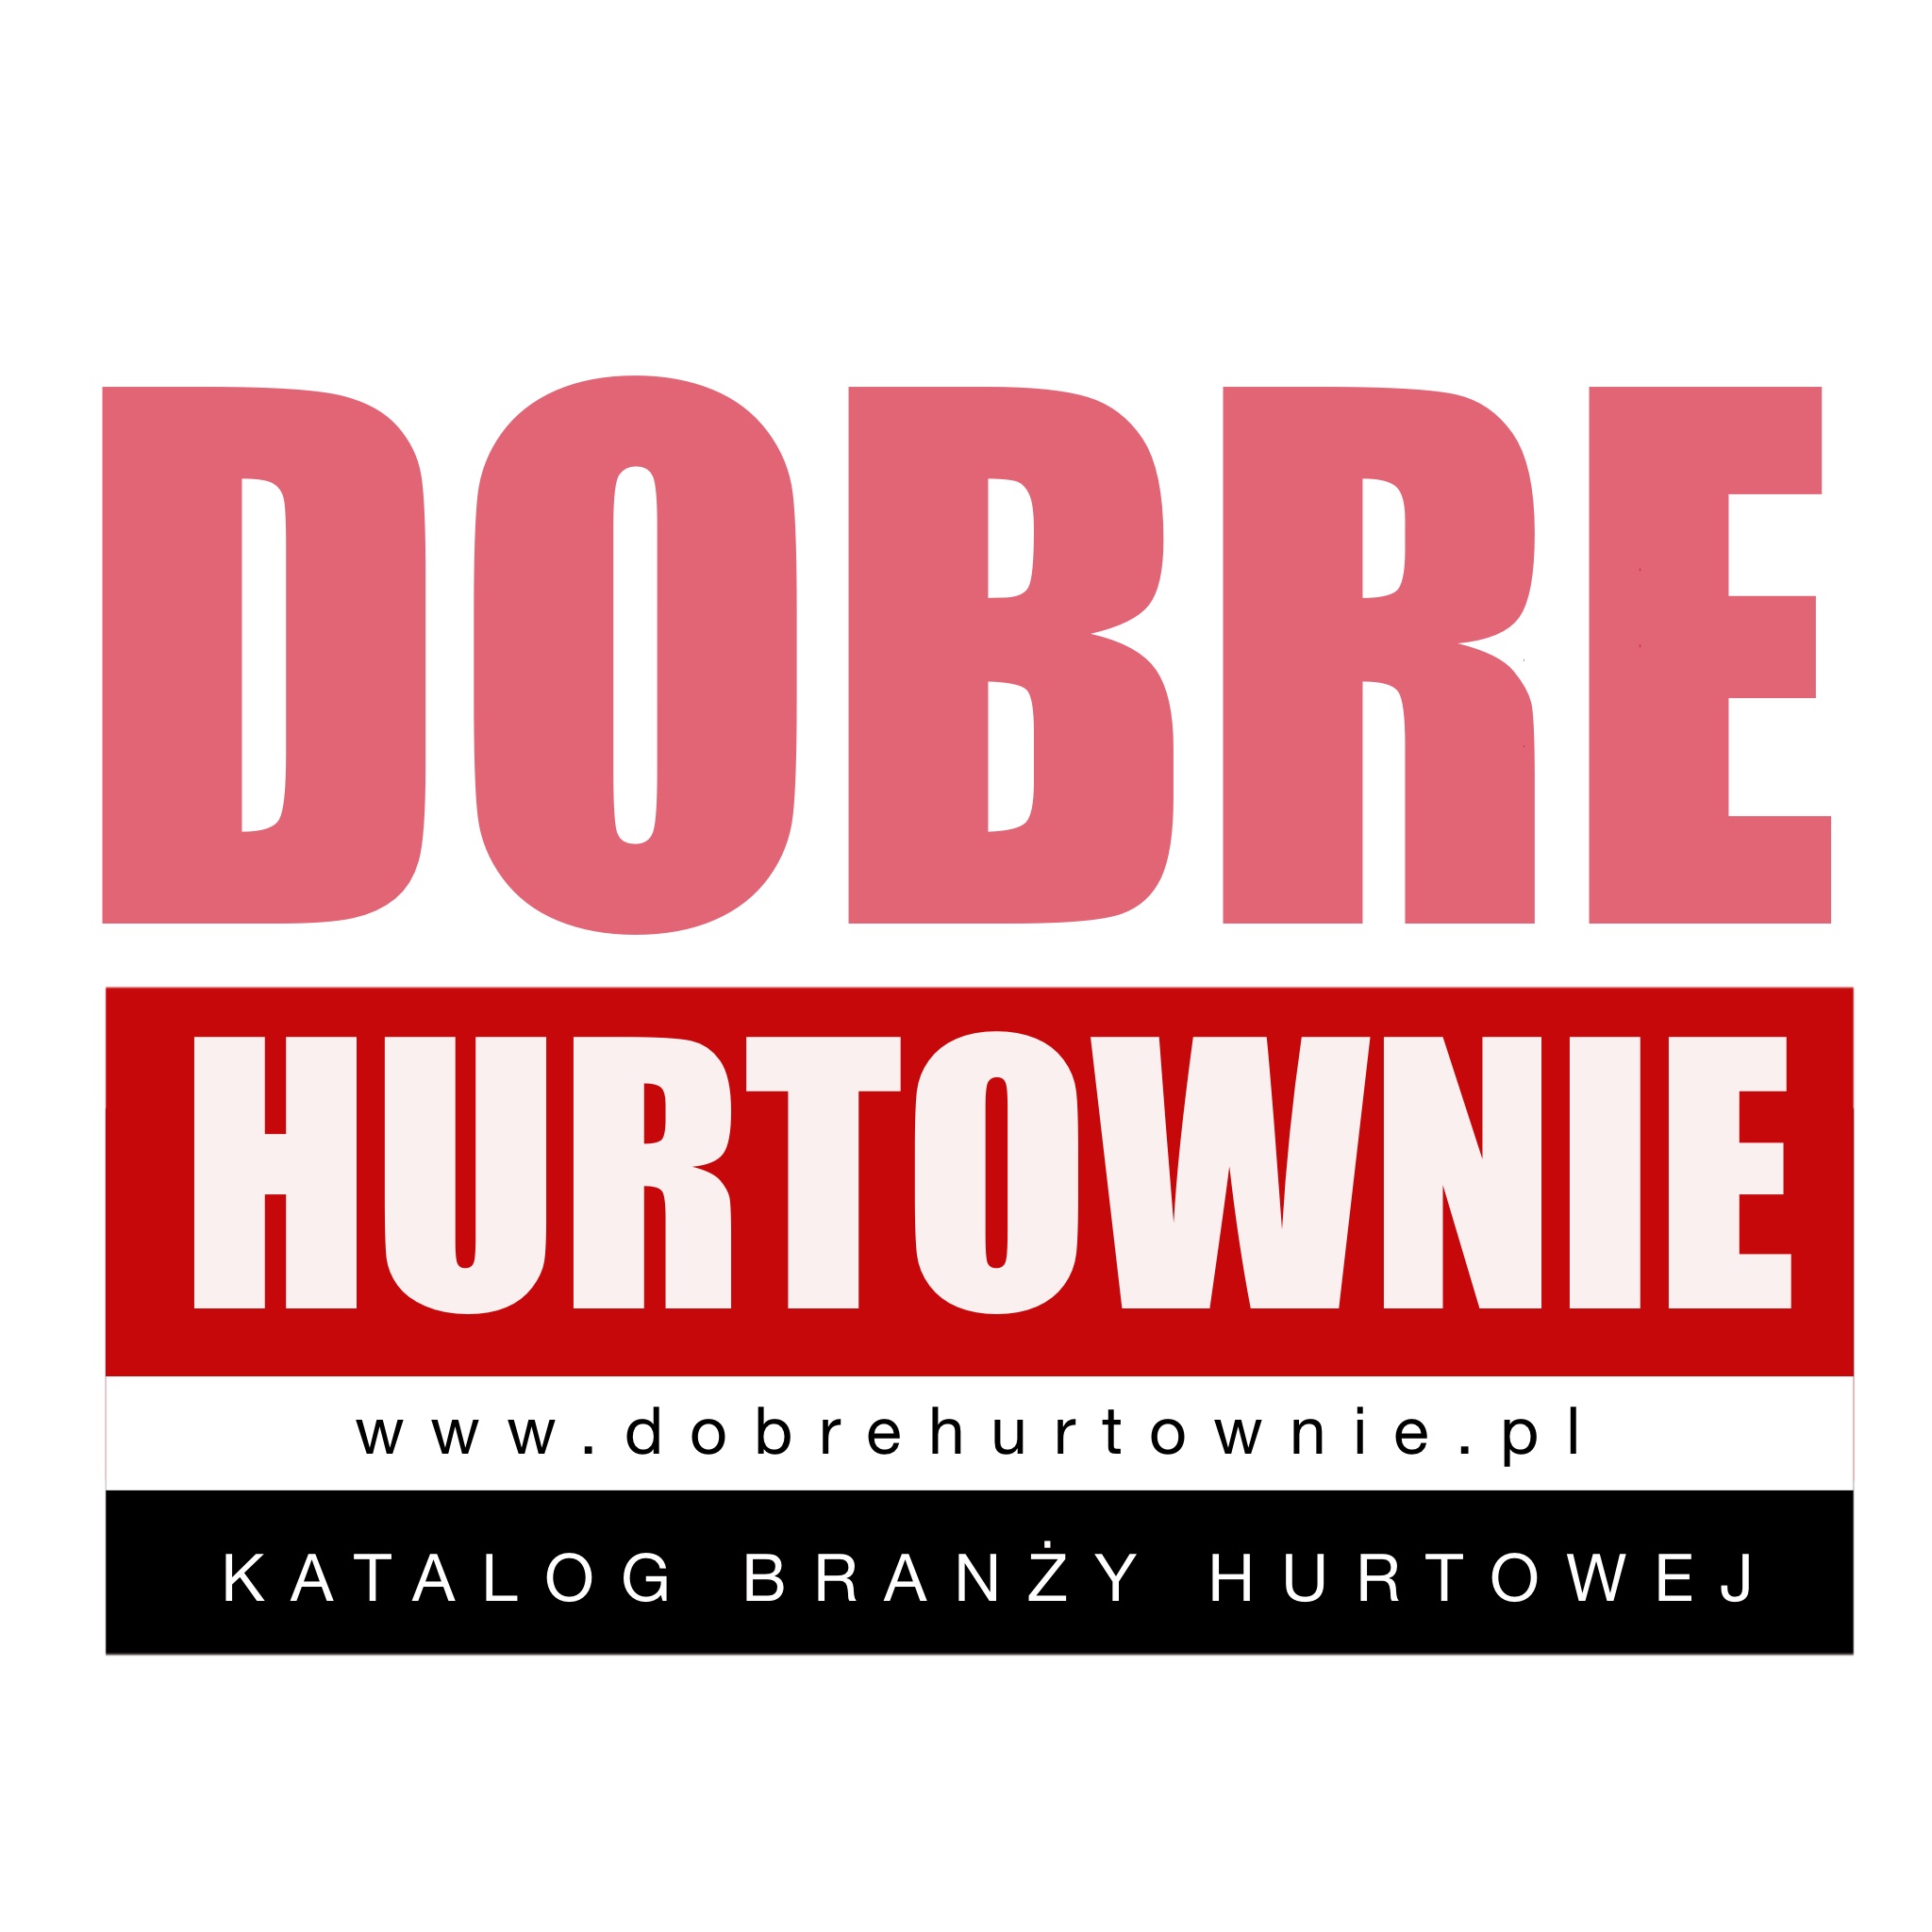 dobrehurtownie.pl